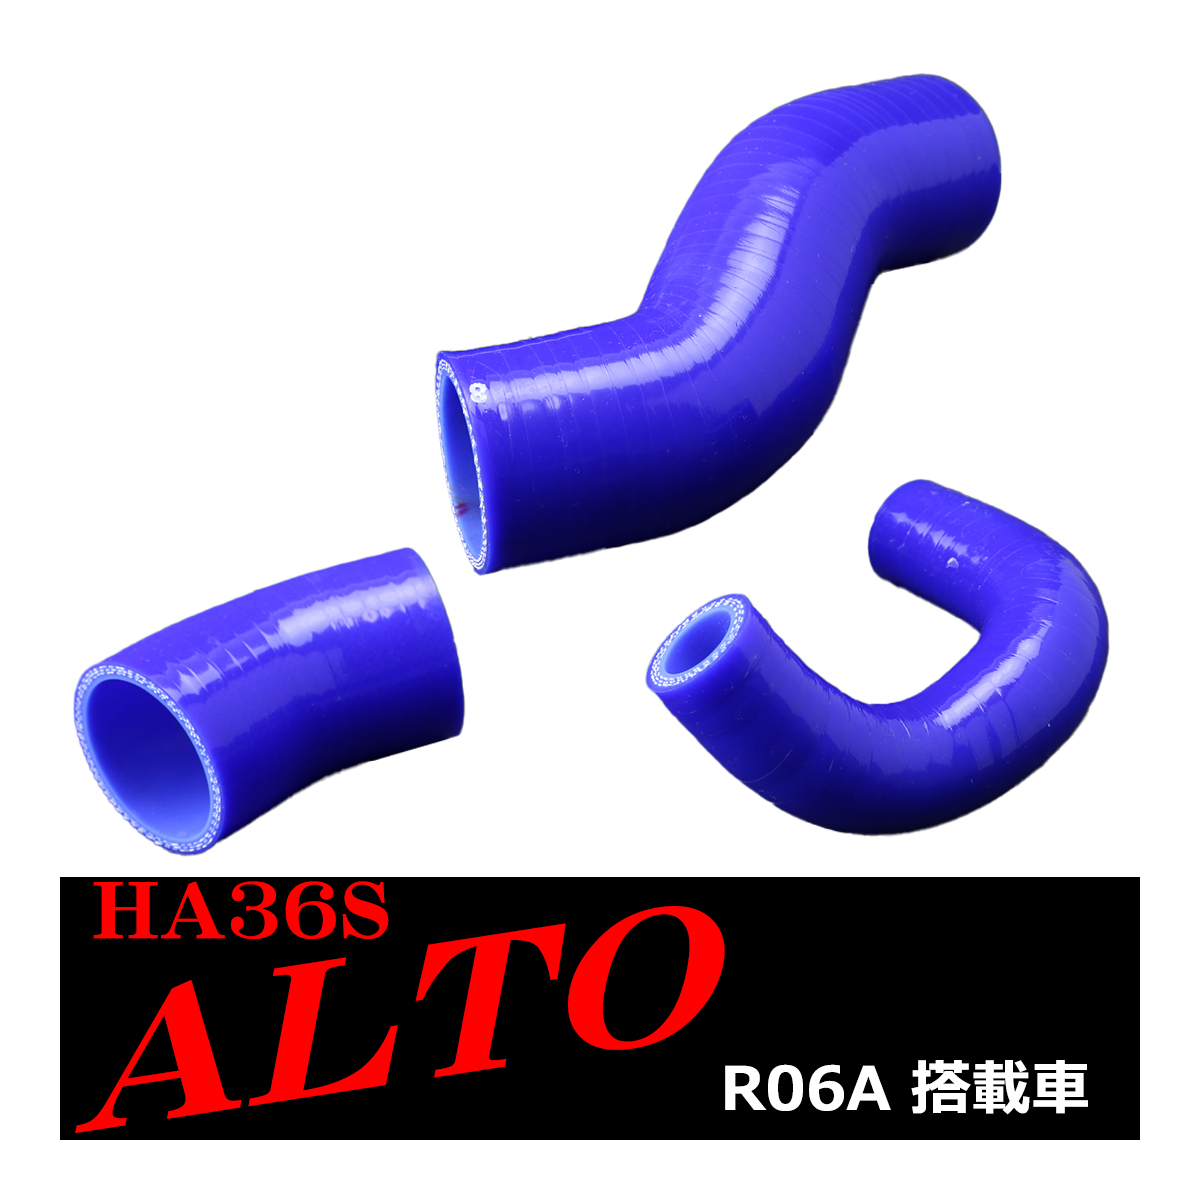 HA36S アルト ターボRS / アルト ワークス シリコン ターボ ホース